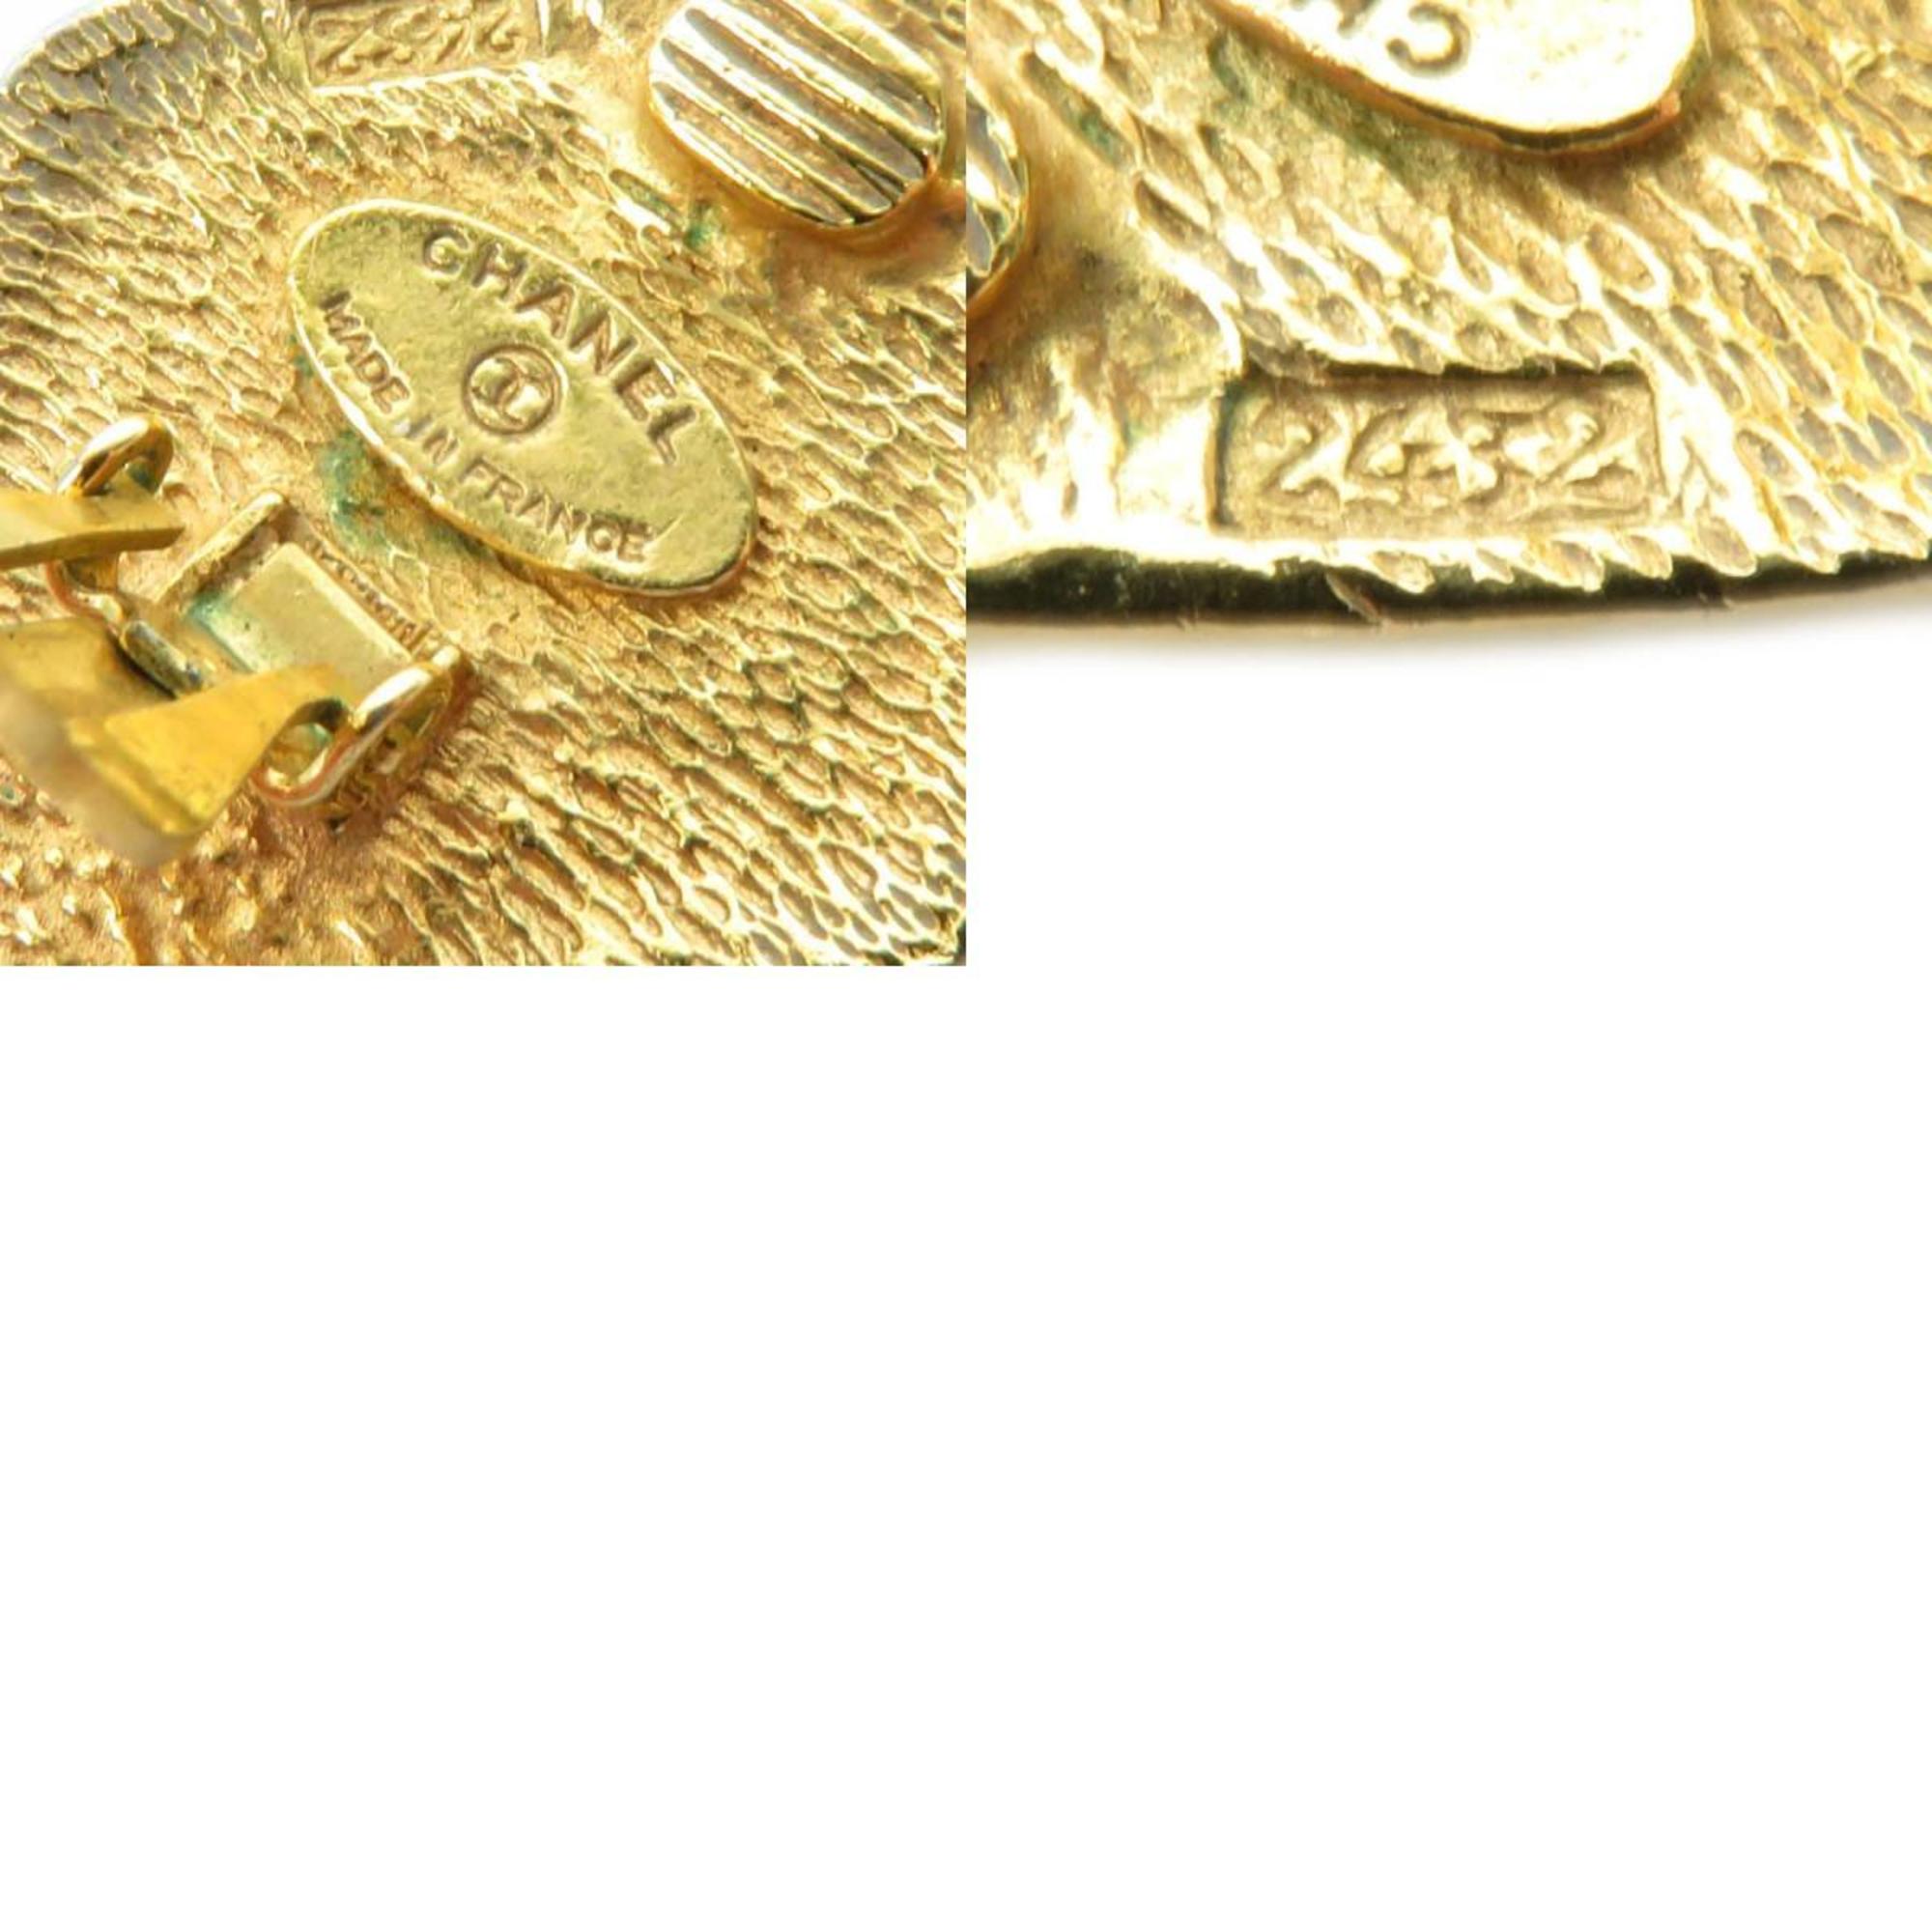 CHANEL Coco Mark Metal Gold Earrings for Women e58637j